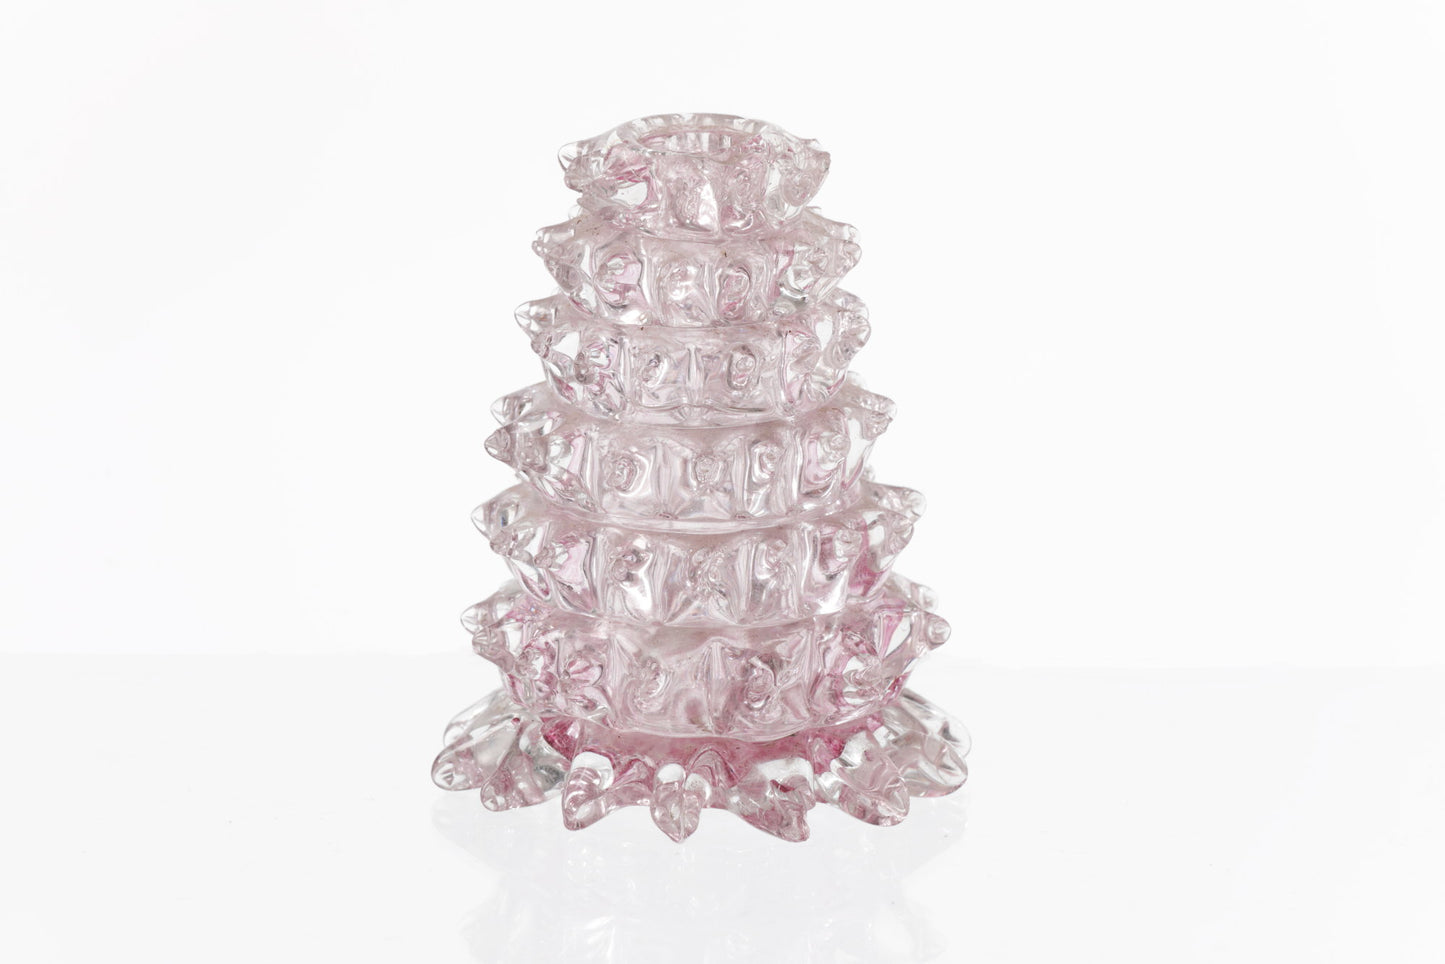 Pink ashlar glass vanity set